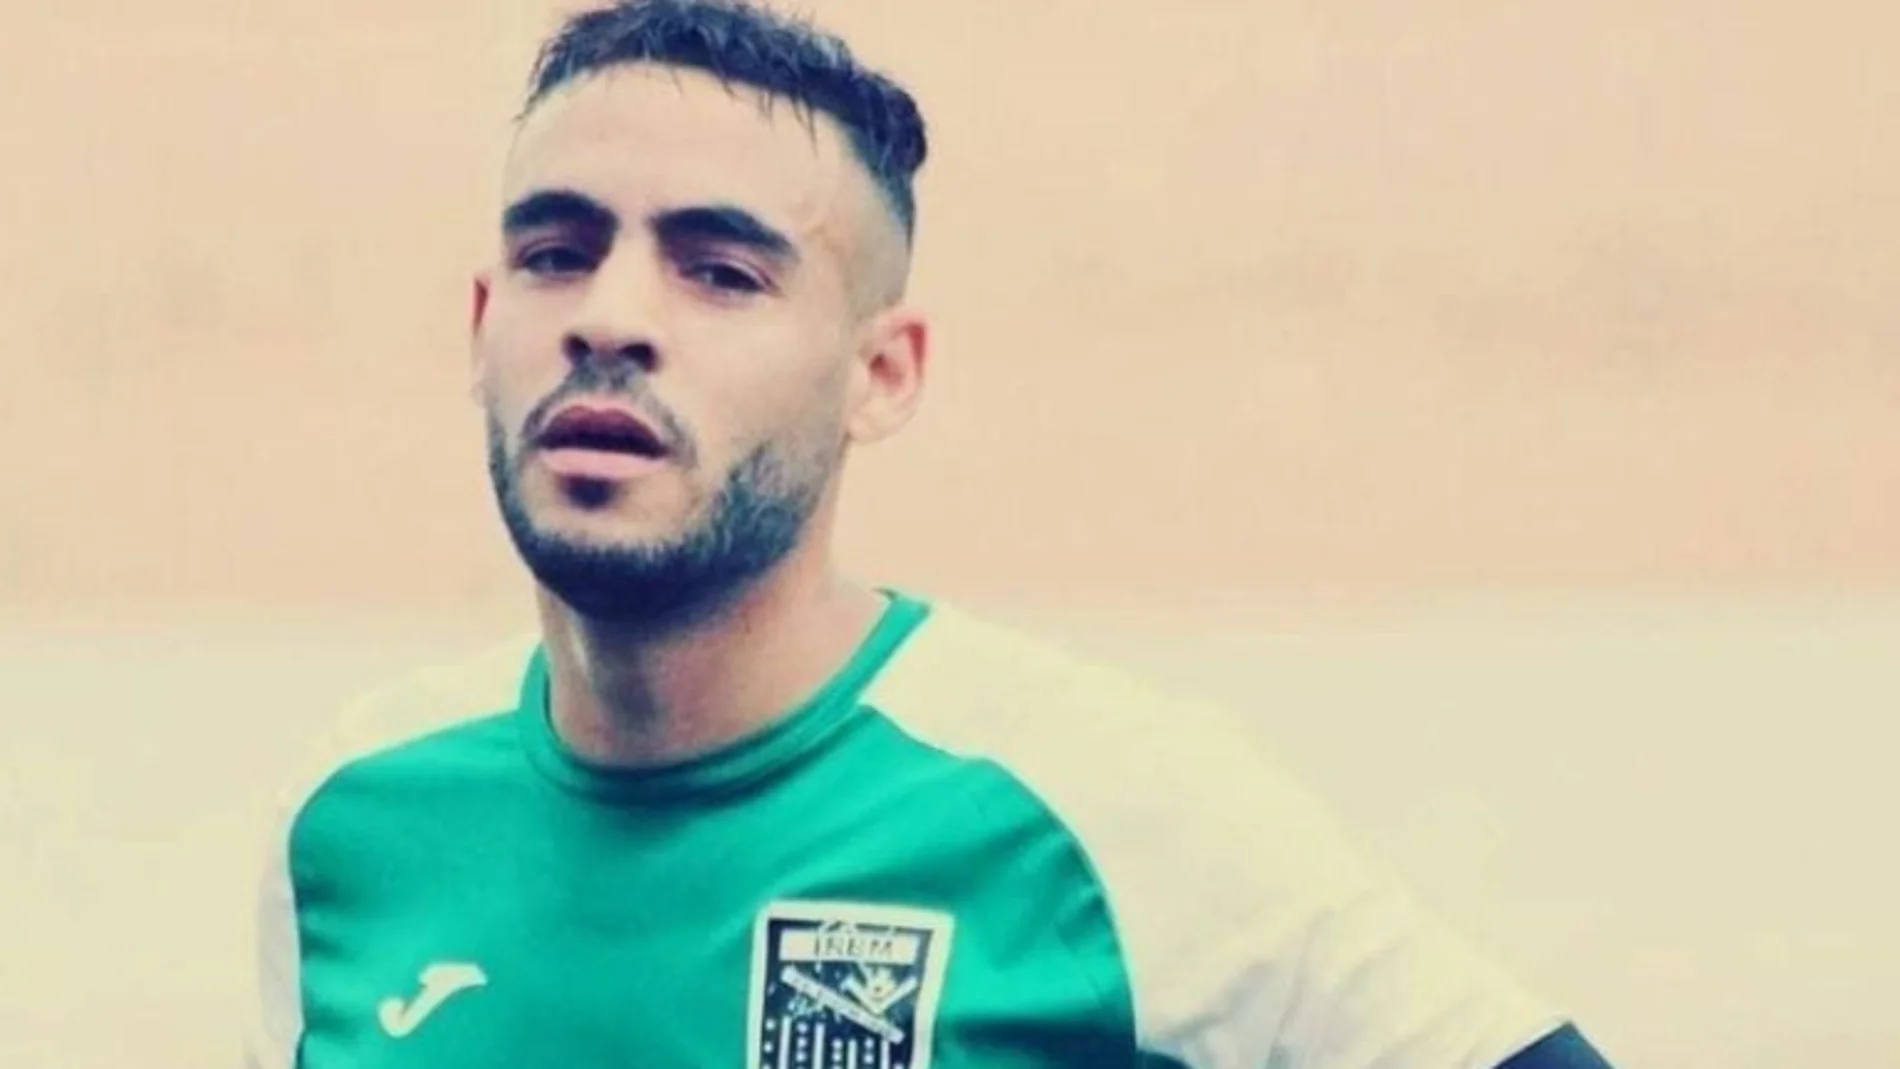 Muere un futbolista argelino por un golpe en la cabeza, el tercero esta semana